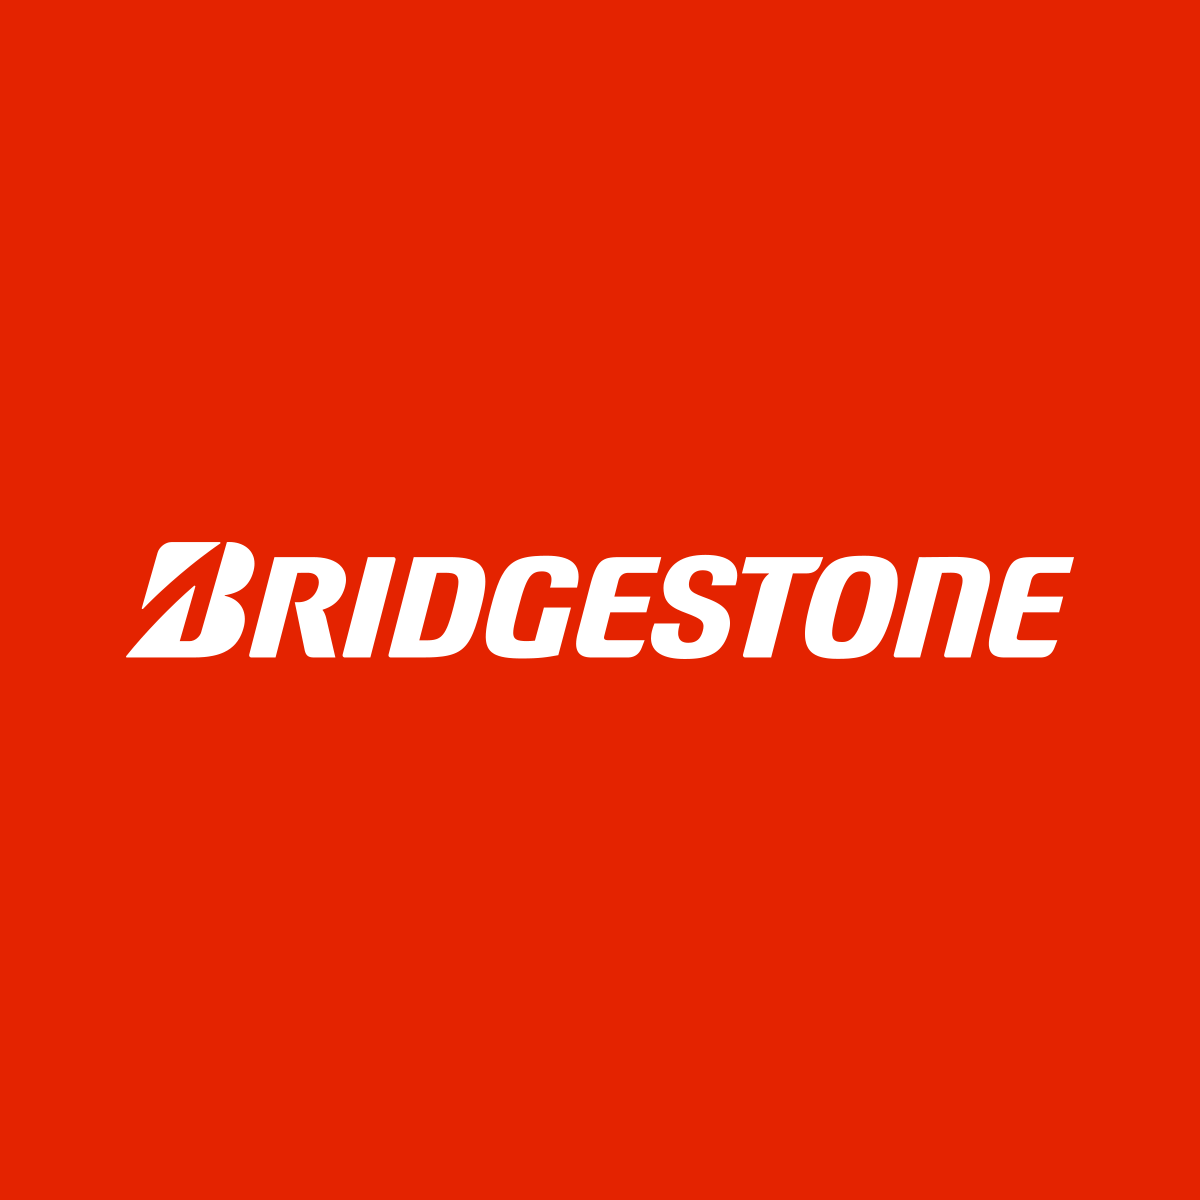 Bridgestone chính thức trở thành đối tác toàn cầu của thế vận hội Olympic 